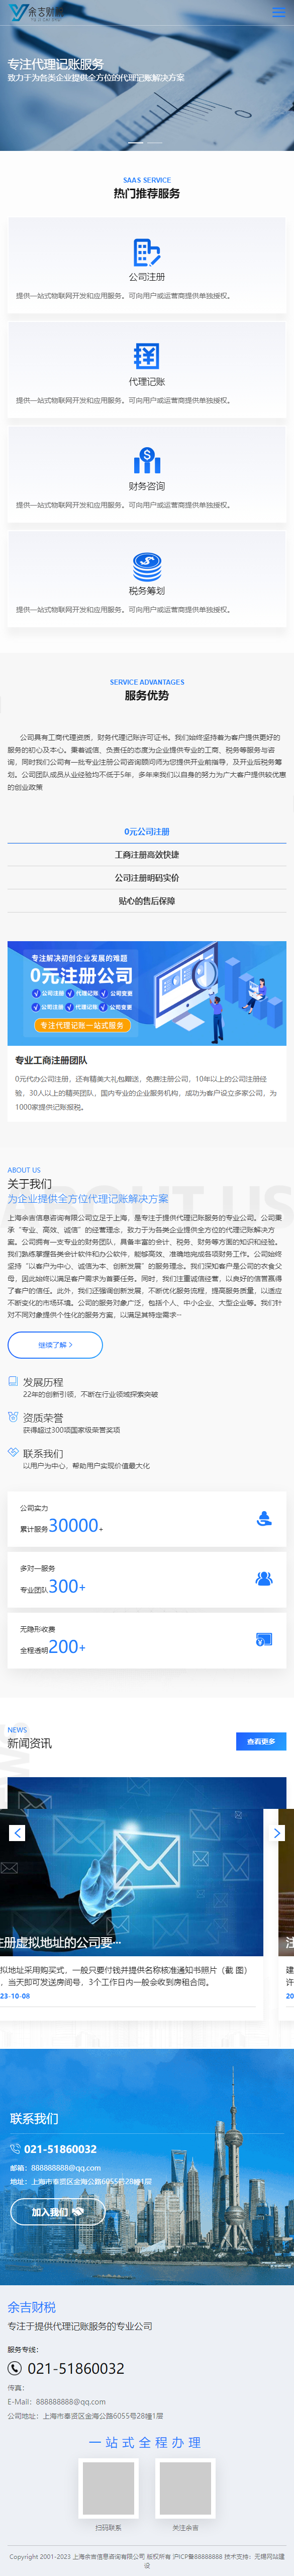 上海余吉财税品牌网站建设 手机端预览图